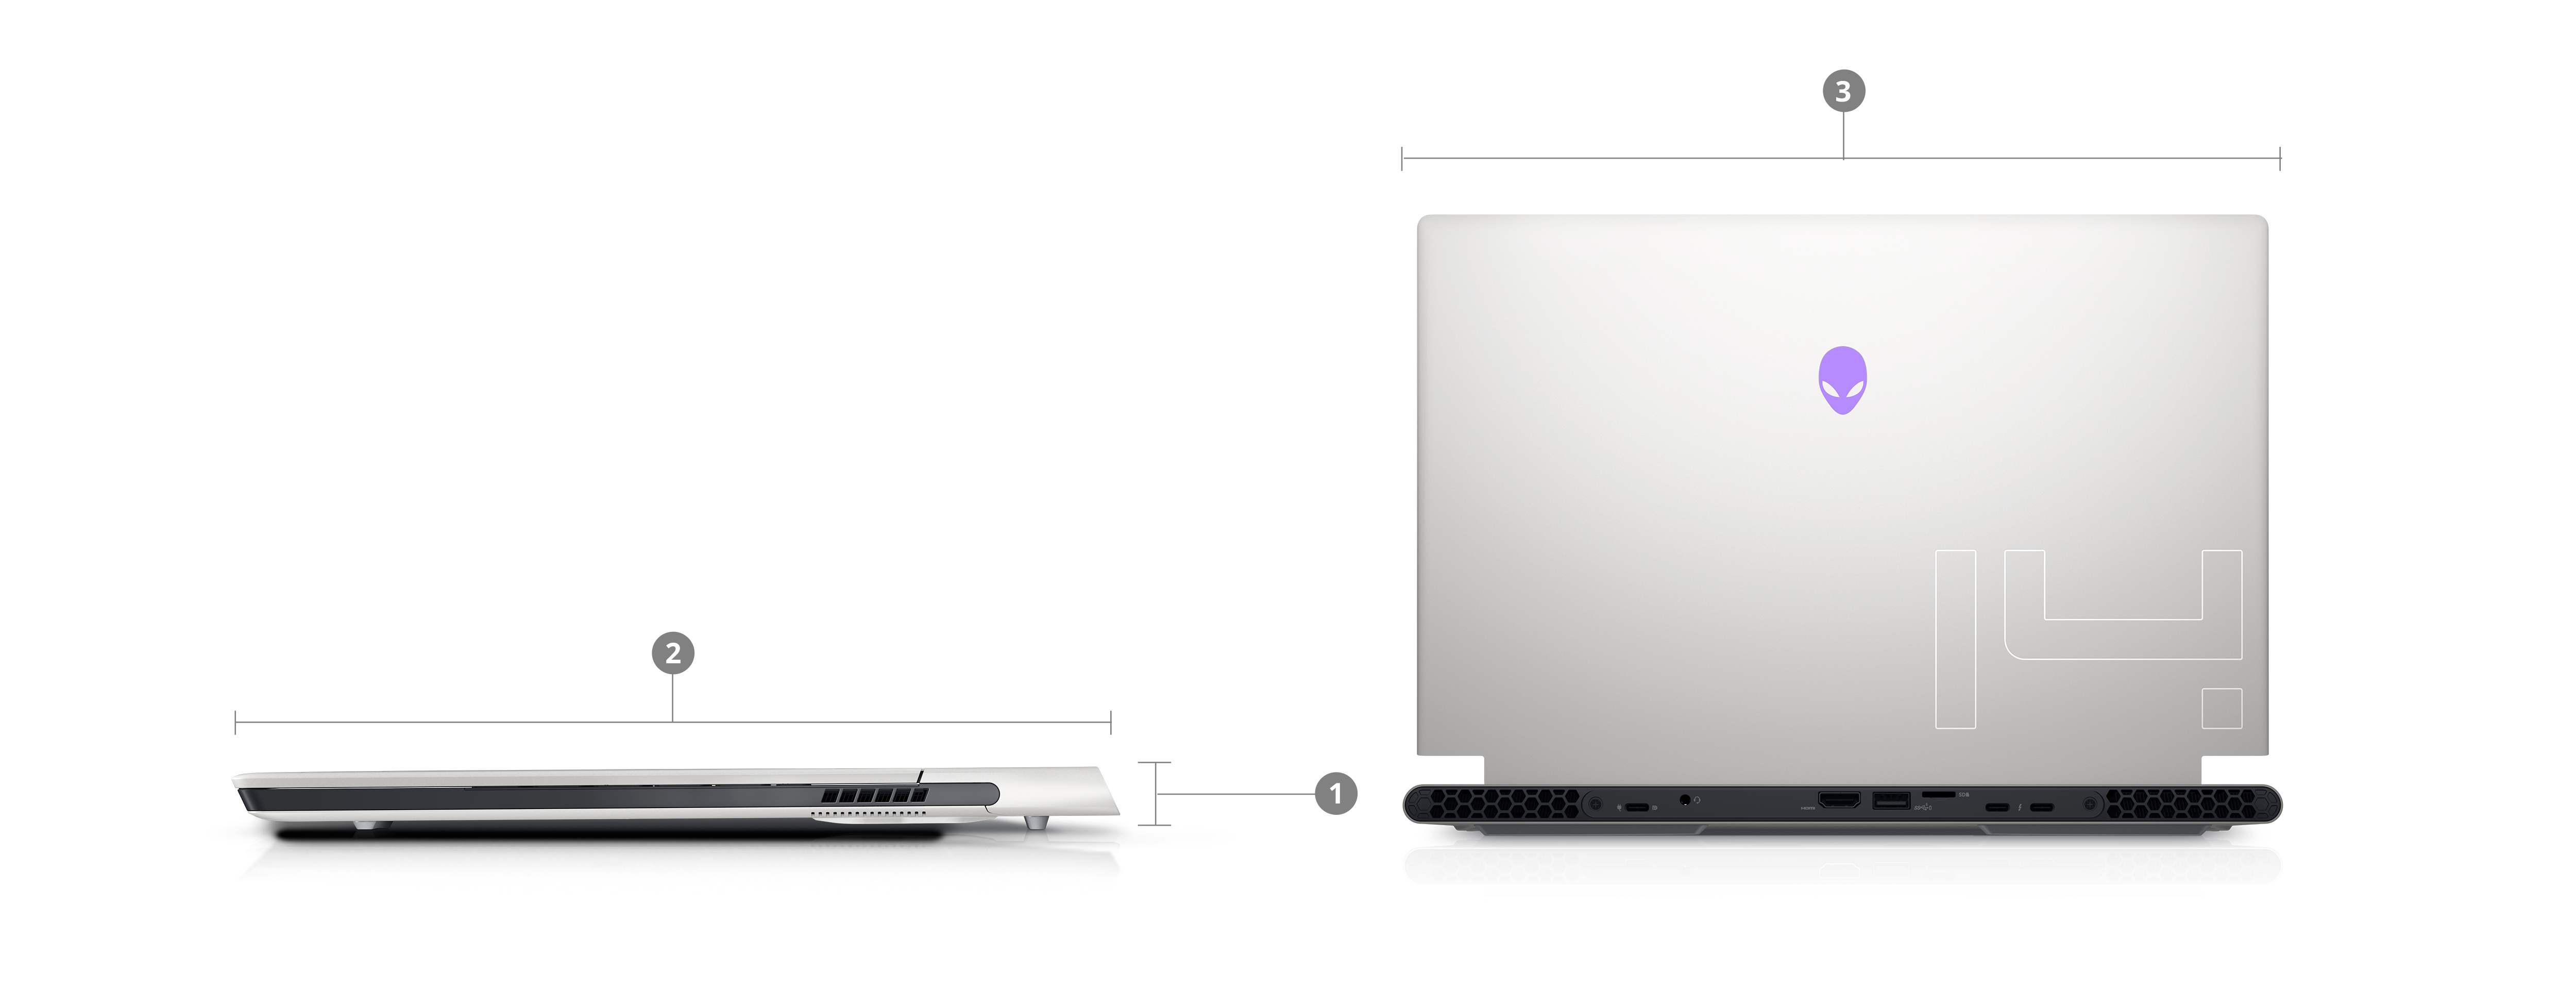 2つのDell Alienware X14ゲーミング ノートパソコンの画像。1～3の番号で製品の寸法と重量を示しています。